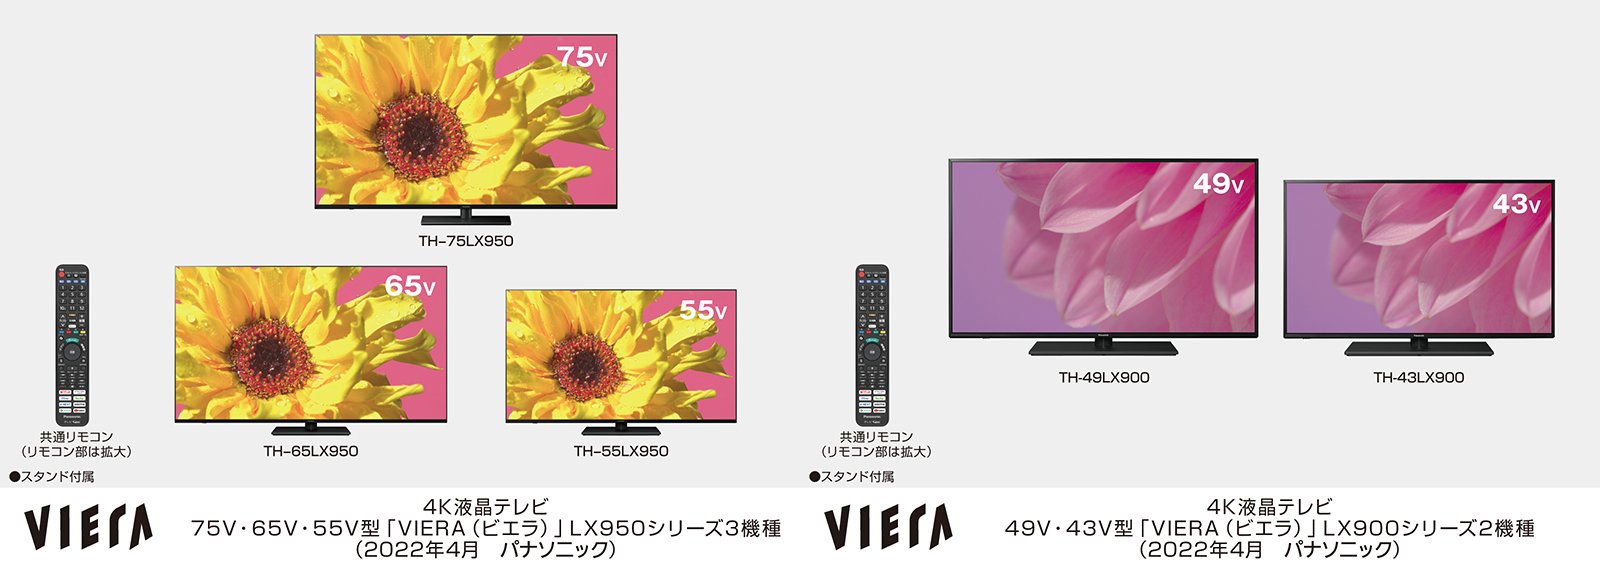 液晶テレビ“4Kビエラ" LX950シリーズ3機種、LX900シリーズ2機種